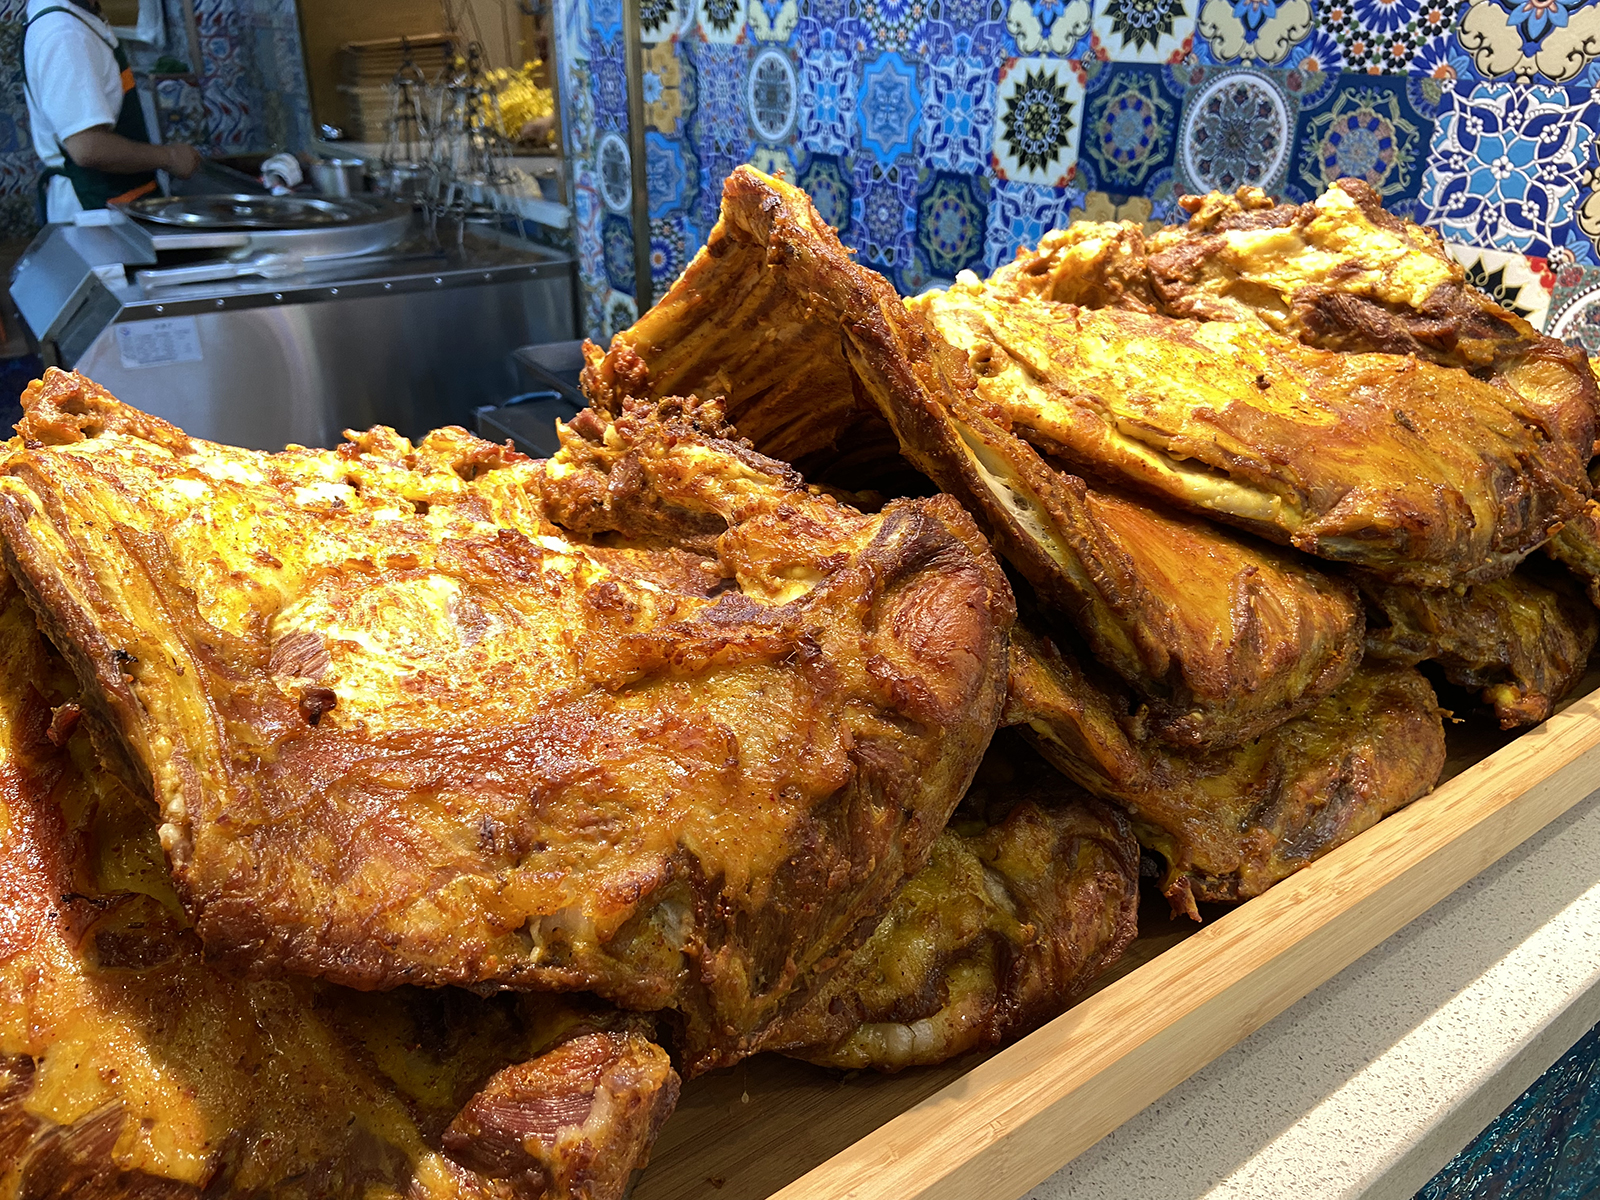 Roast lamb chops are displayed at a restaurant in Xinjiang. /CGTN